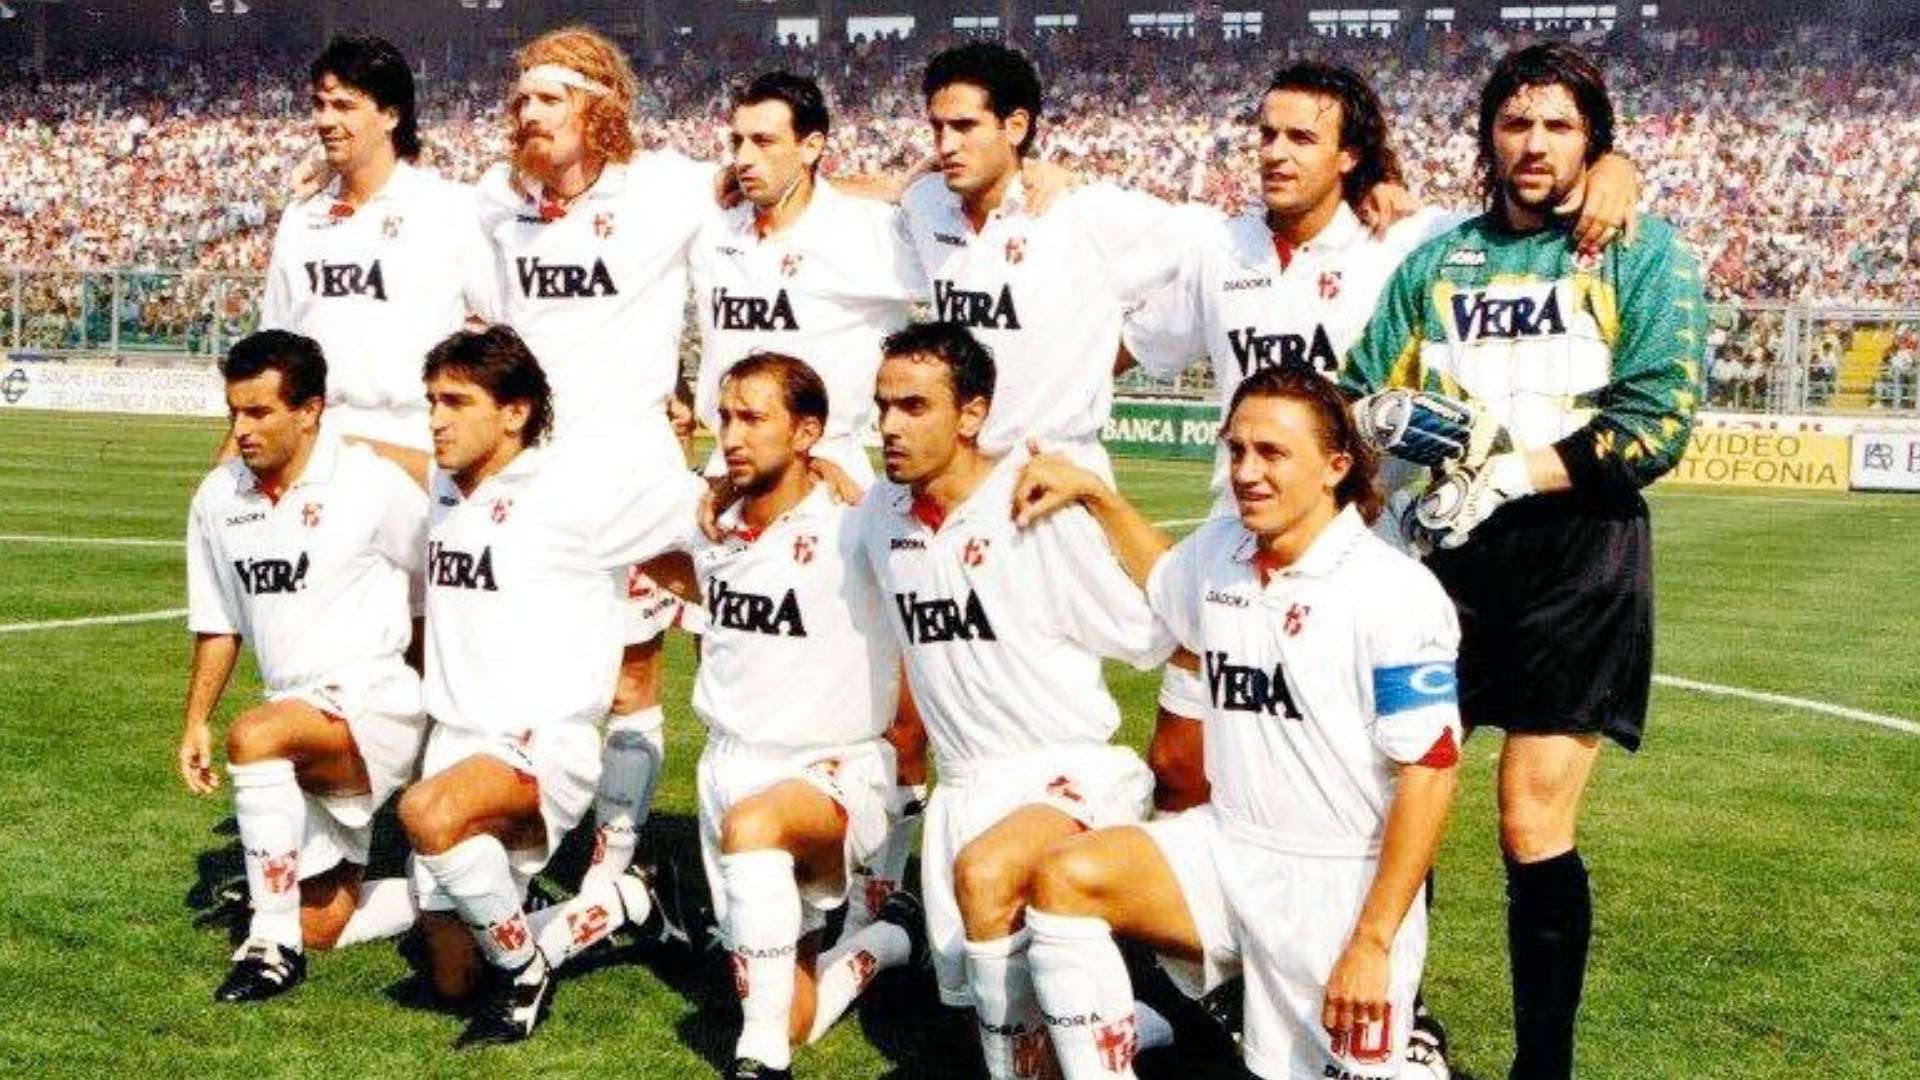 Padova Serie A 1995/96